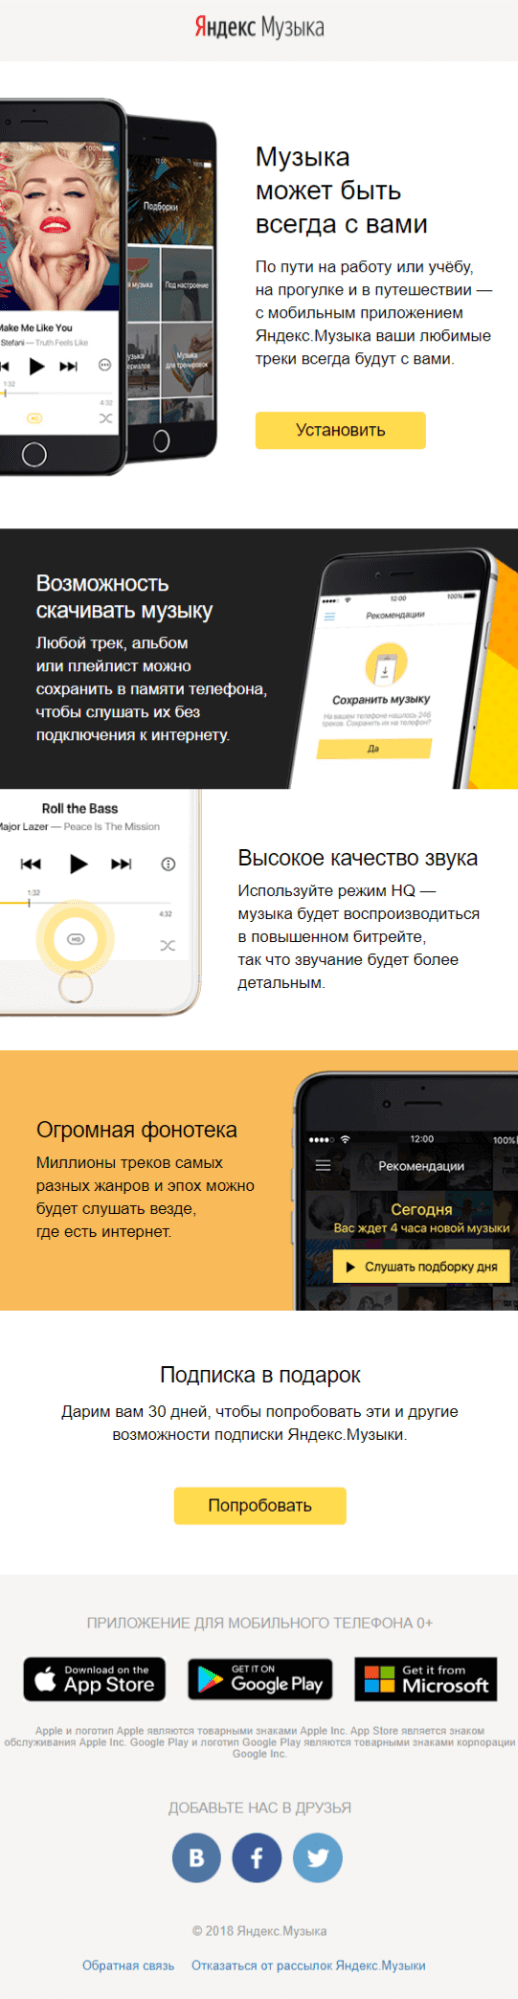 Письмо от Яндекс.Музыки с предложением пробной подписки